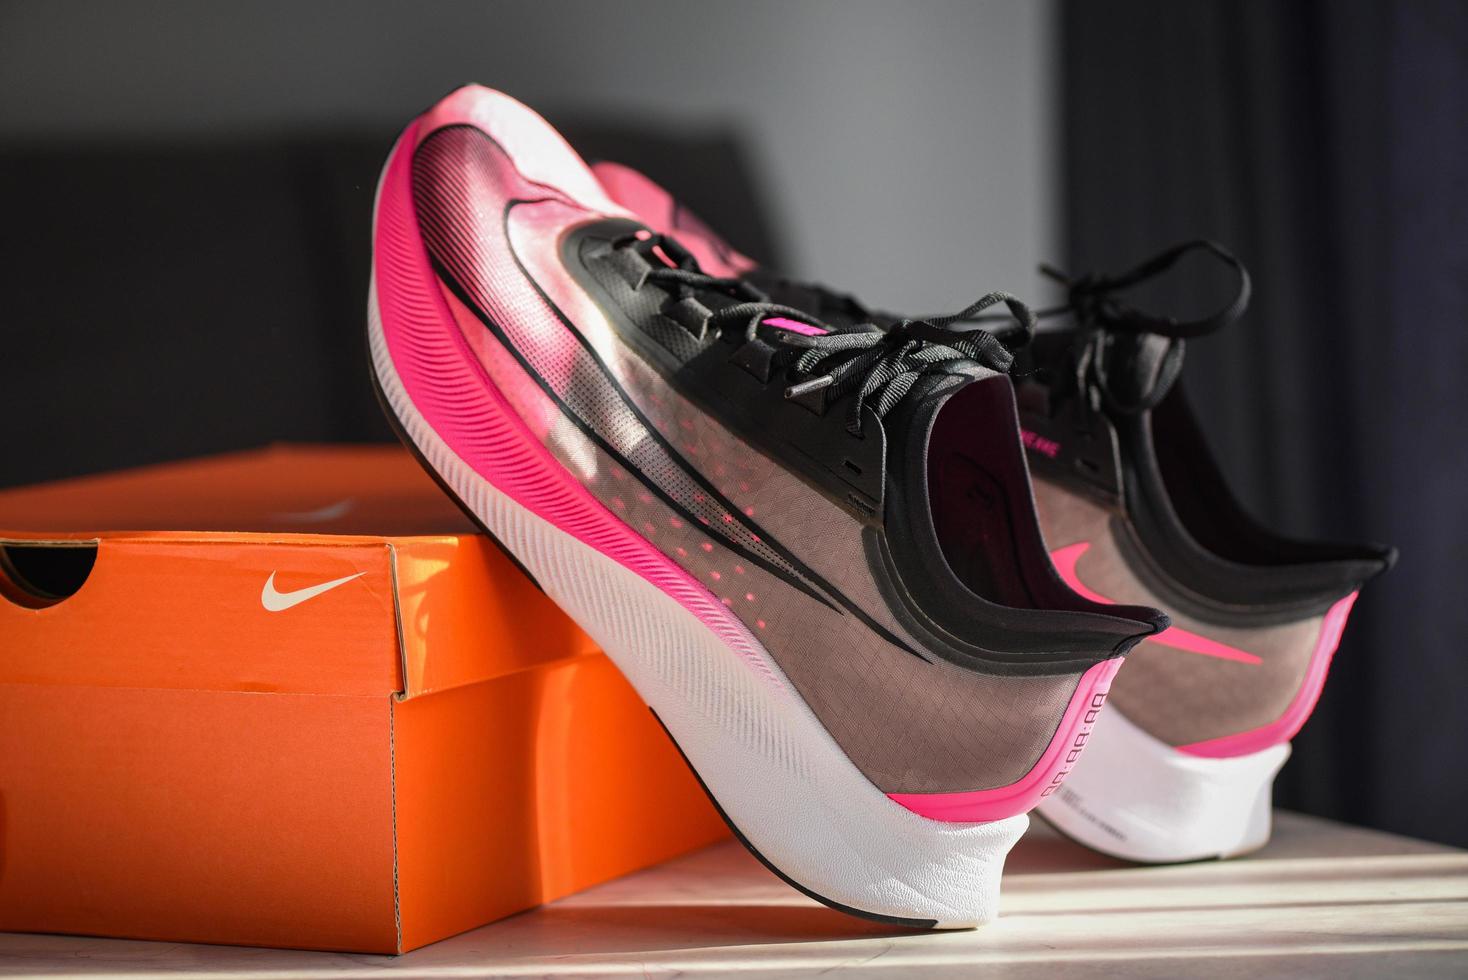 Nike hardloopschoenen, nike zoom fly 3 roze-zwart heren hardloopschoenen op doos in de winkel foto